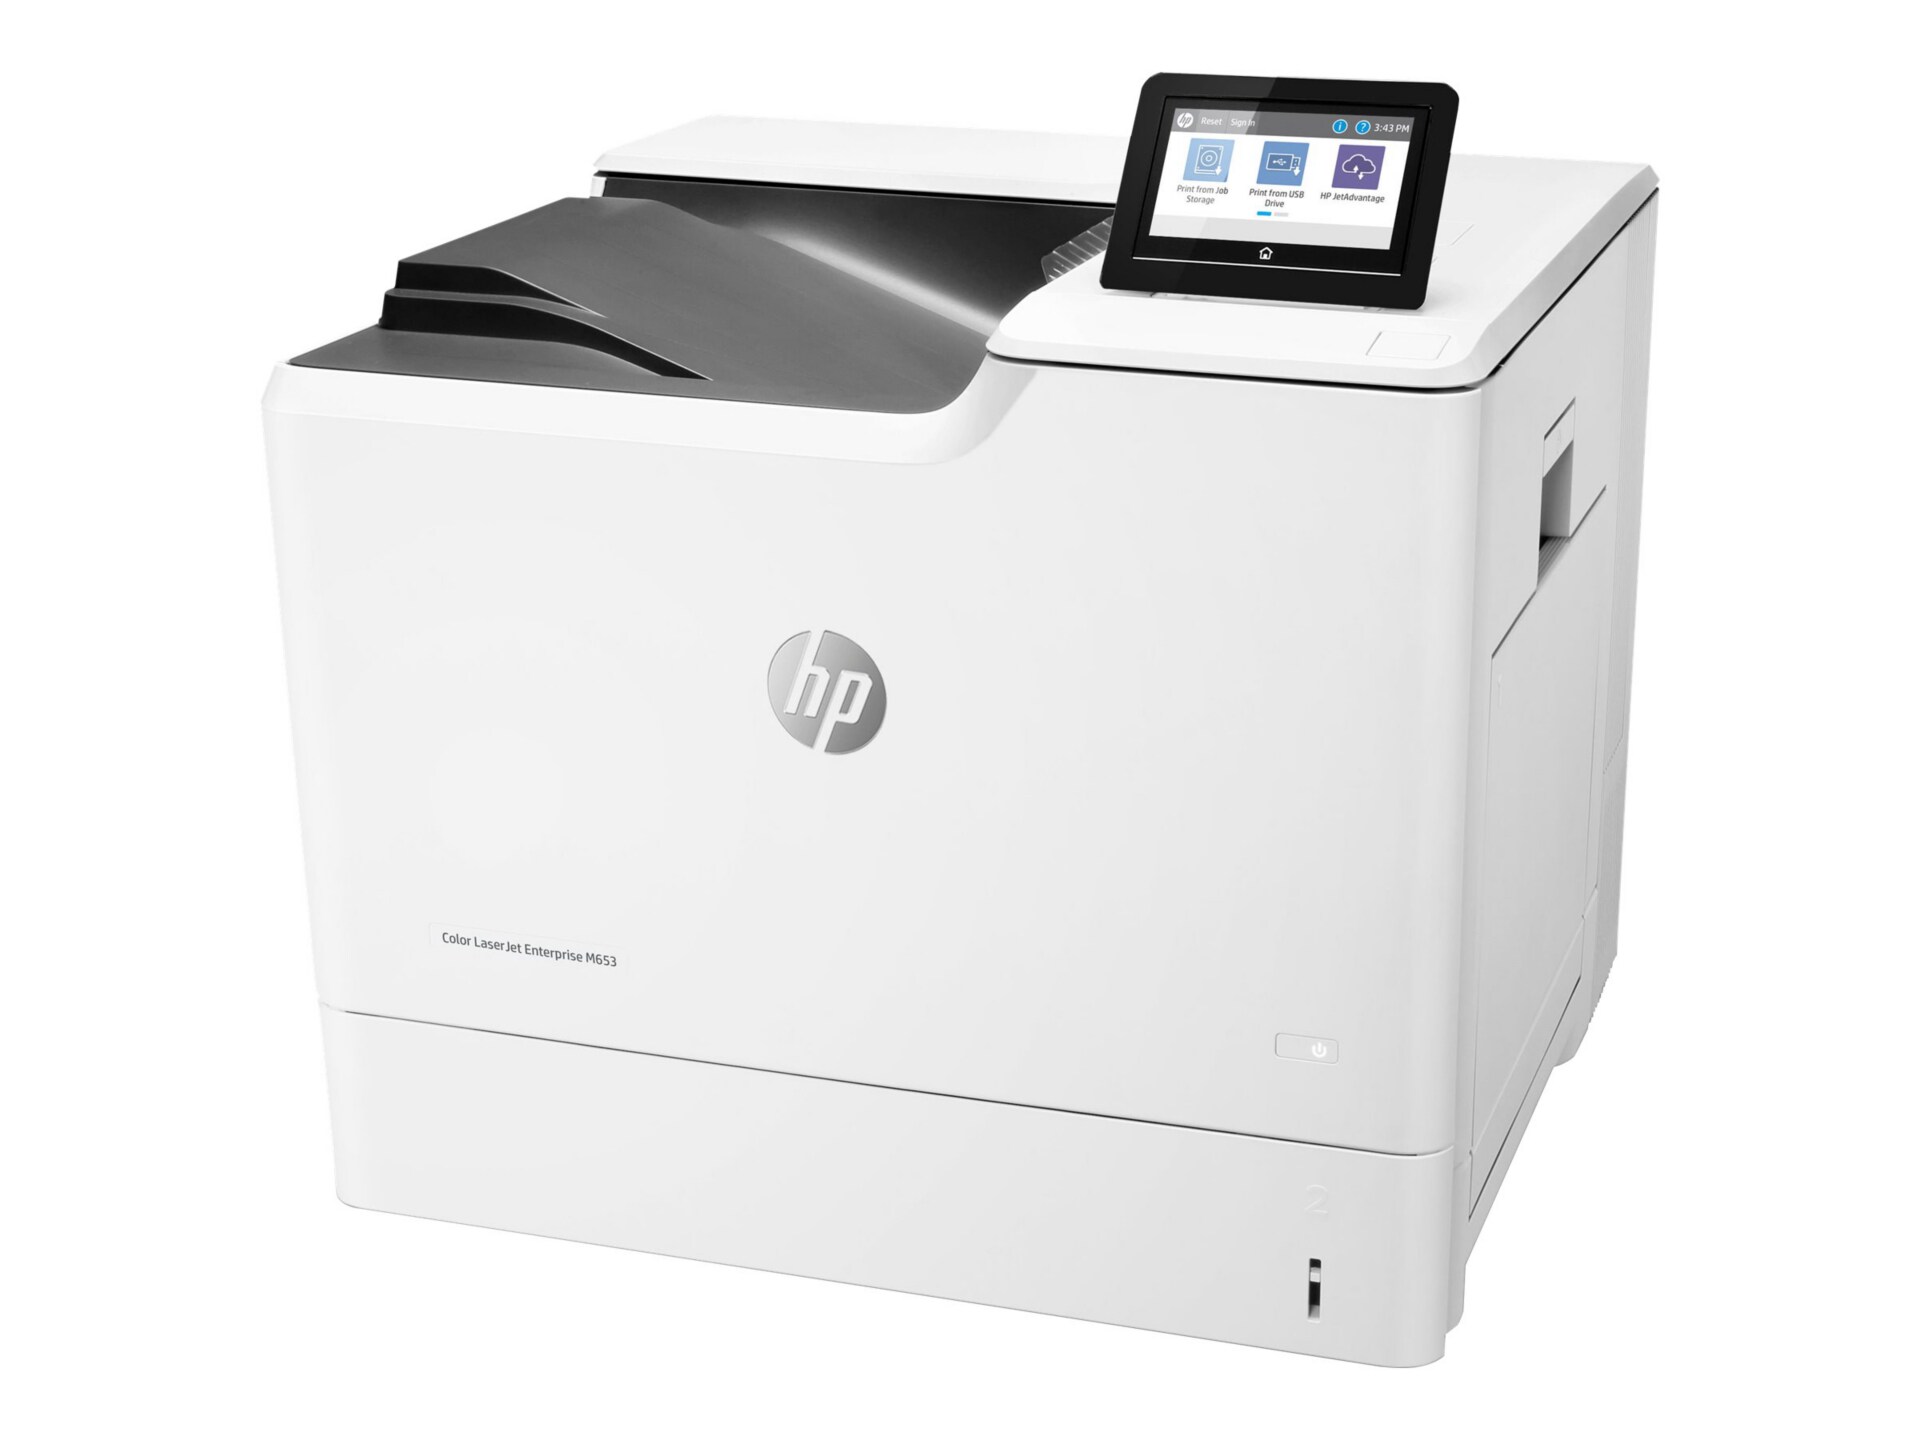 HP LaserJet M653dn Laser Printer - Color